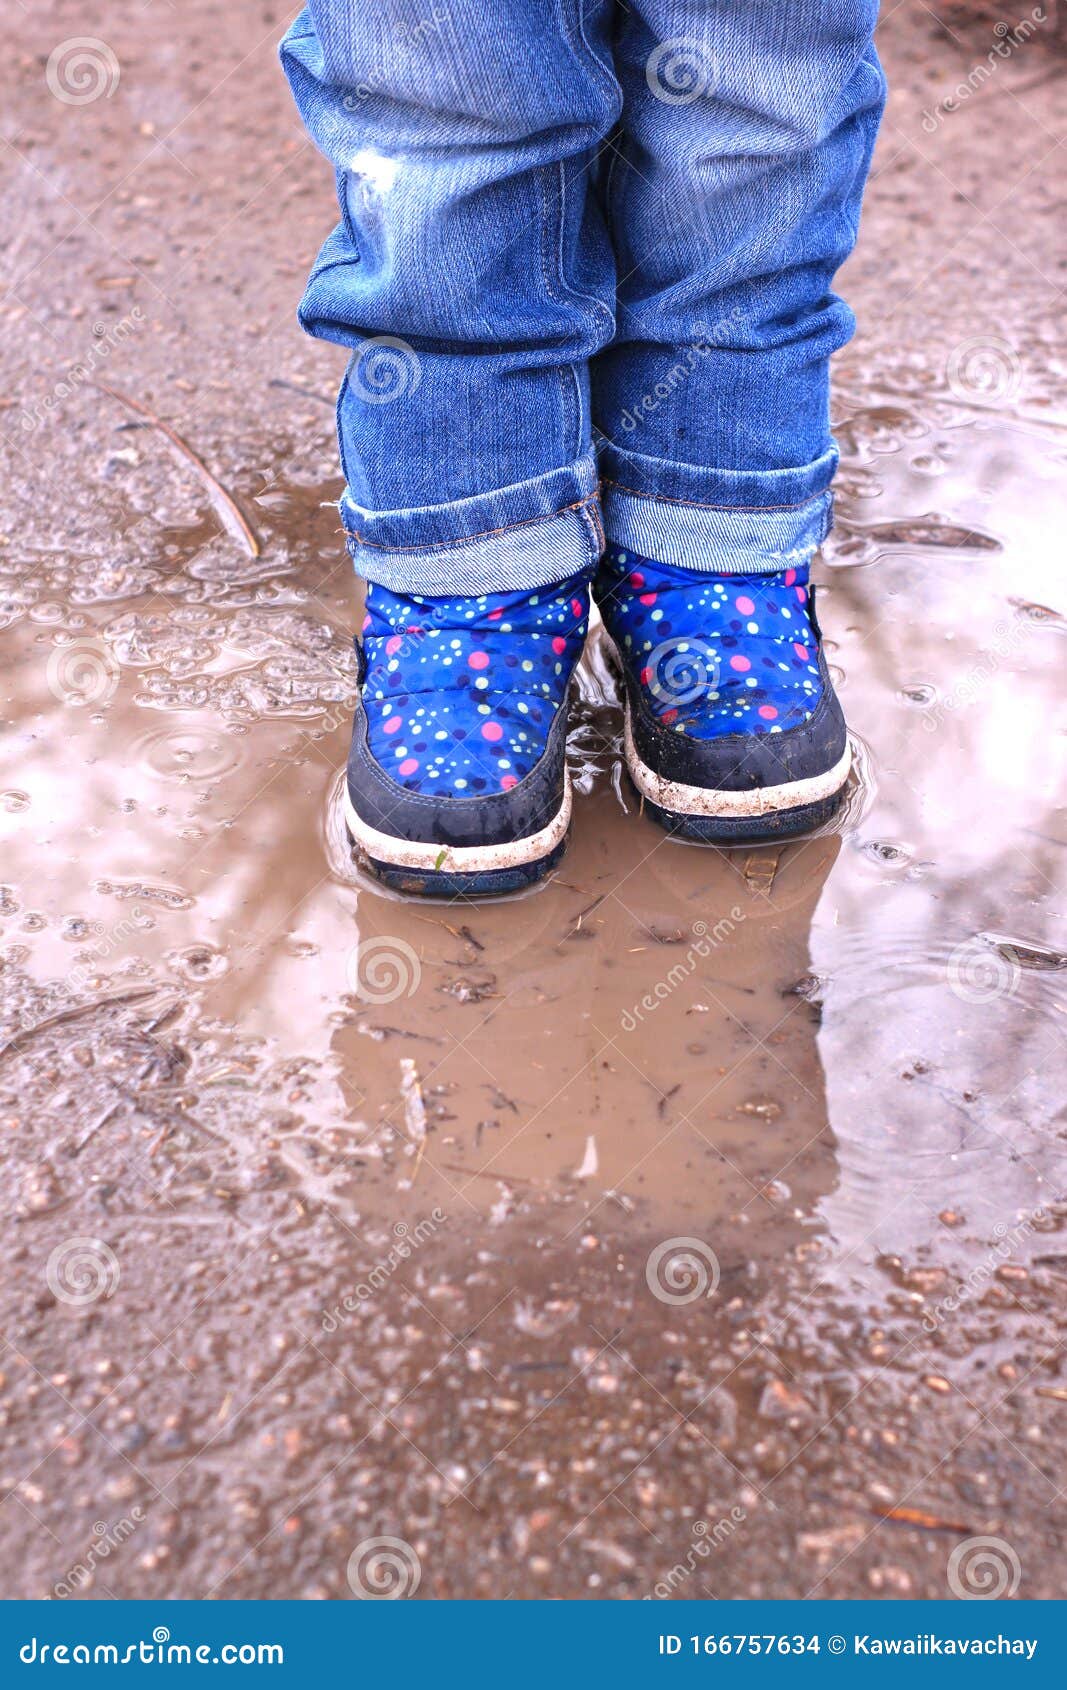 靴子踩泥泥深得要脱靴_皮靴踩泥灌水了 - 随意云